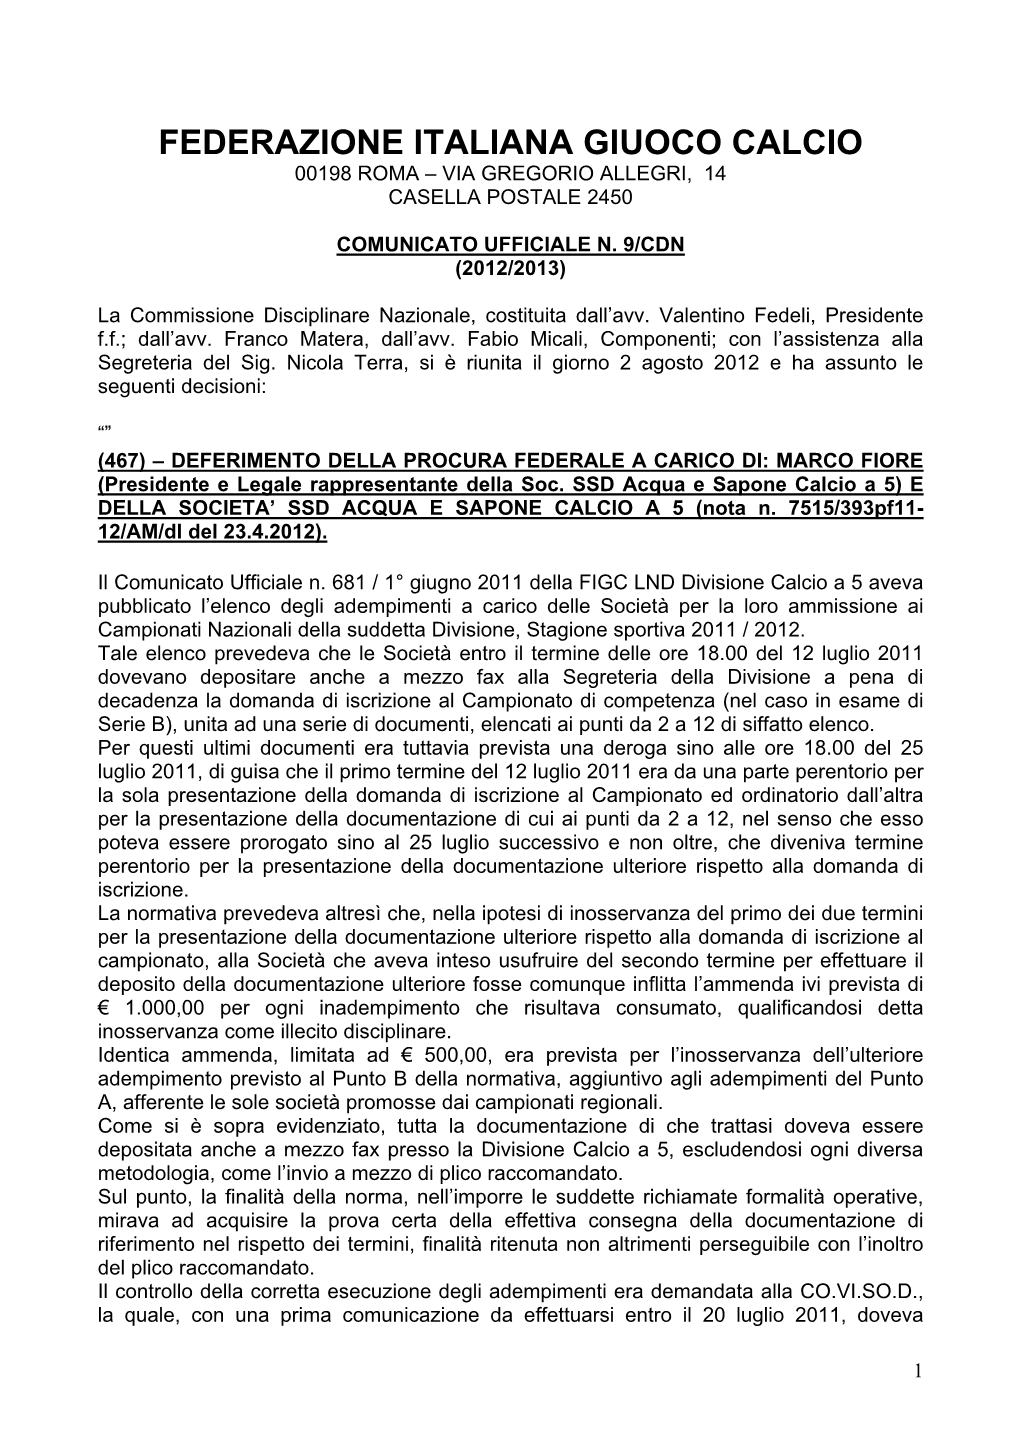 Federazione Italiana Giuoco Calcio 00198 Roma – Via Gregorio Allegri, 14 Casella Postale 2450